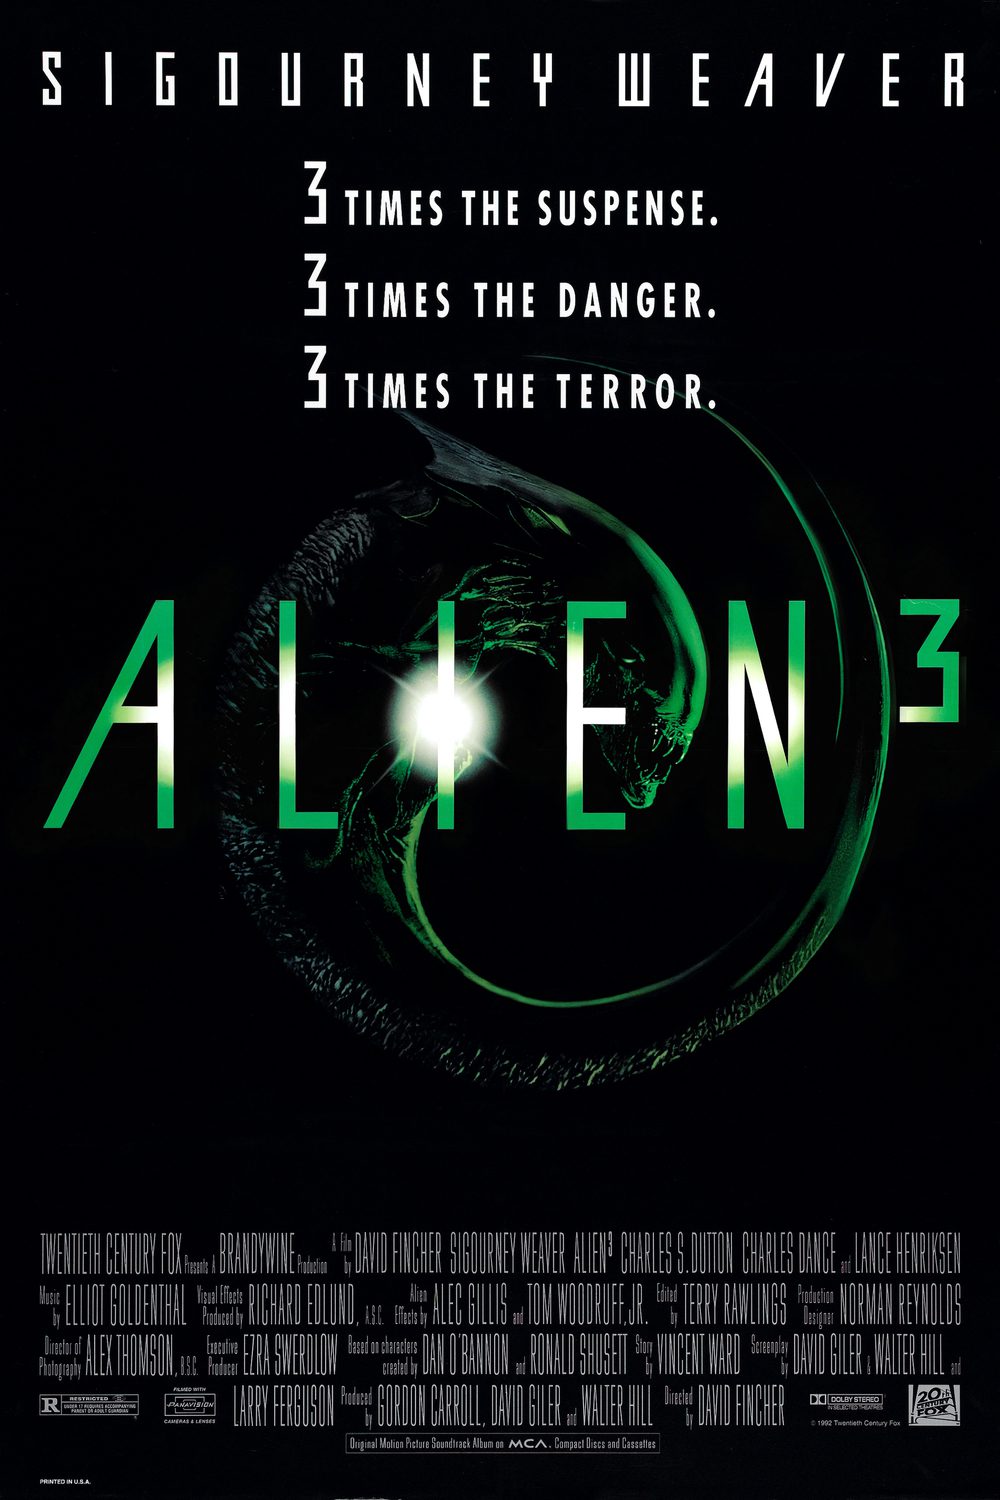 ดูหนังออนไลน์ฟรี Alien 3 เอเลี่ยน 3 อสูรสยบจักรวาล